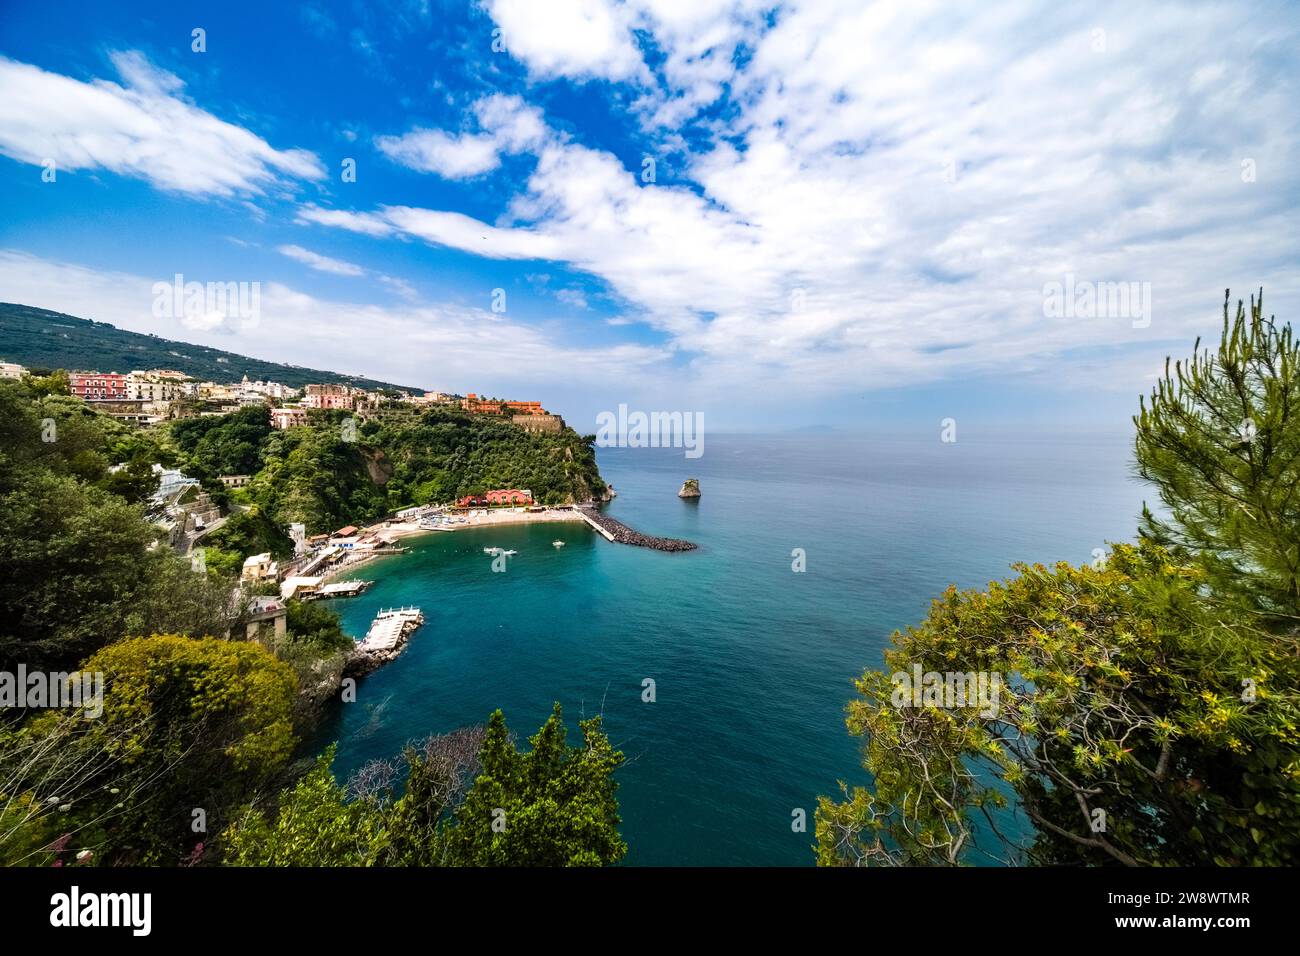 Die kleine Stadt Vico Equense an der Amalfiküste, Costa d’Amalfi, eines der wichtigsten touristischen Zentren Süditaliens. Stockfoto